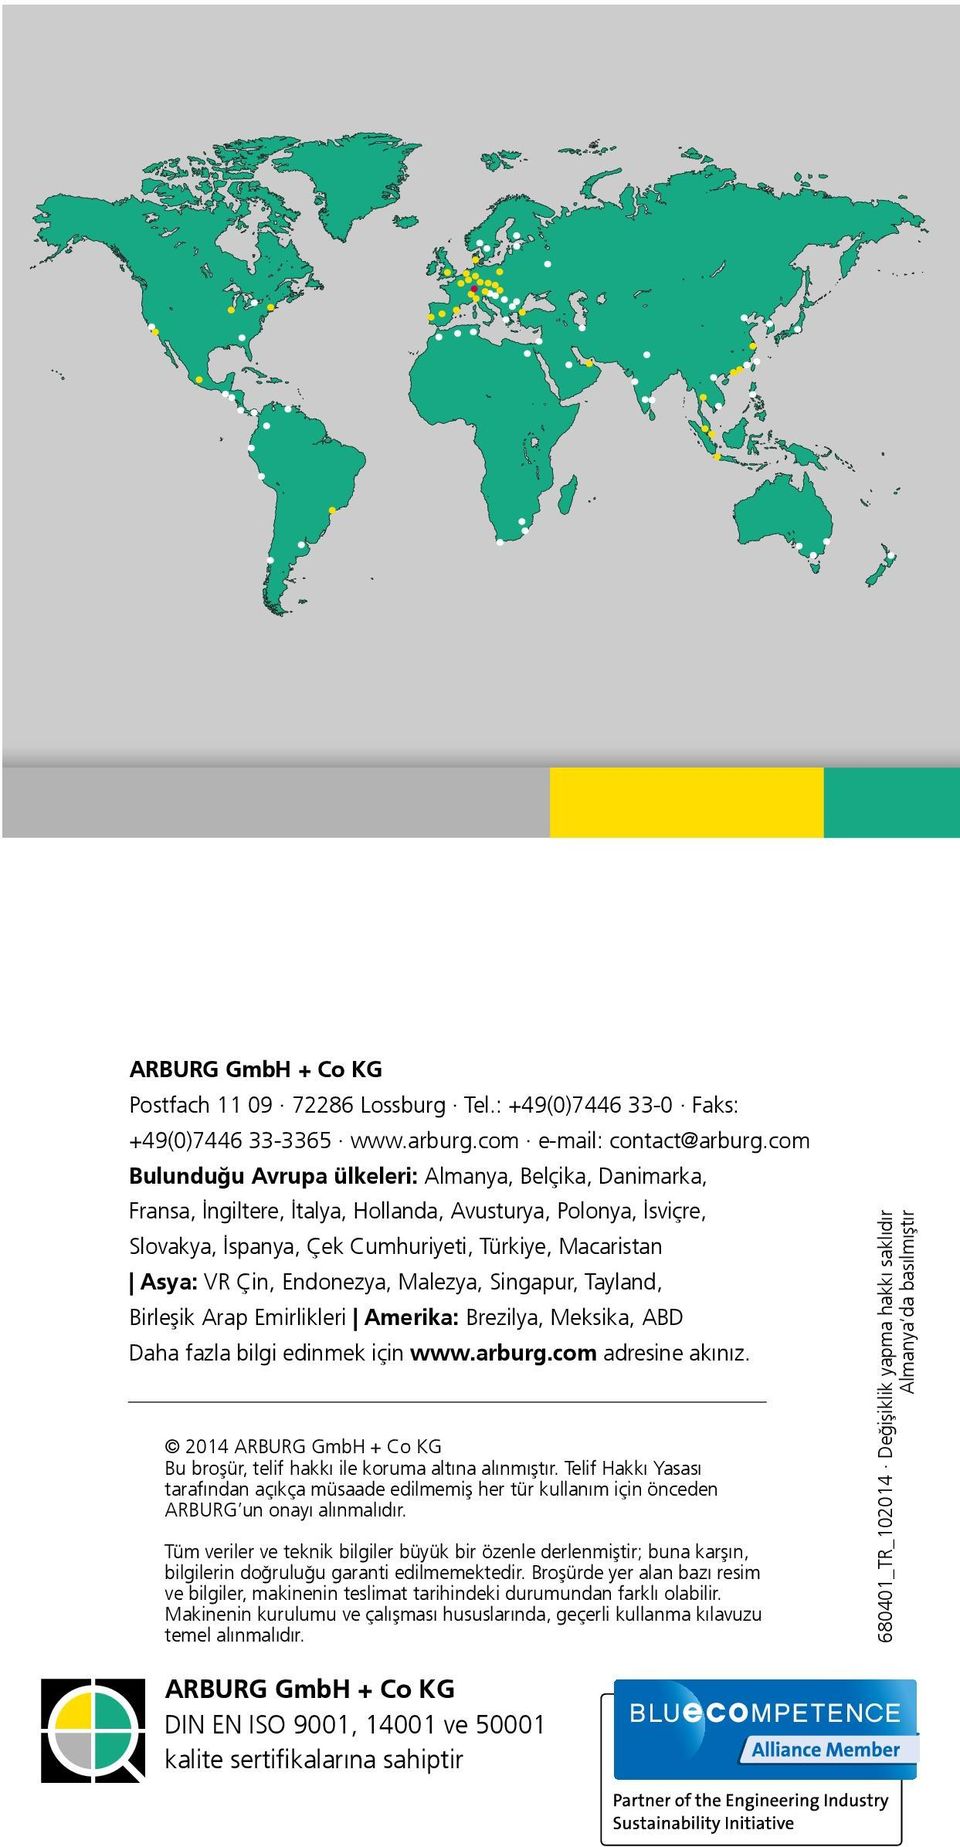 Emirlikleri Amerika: Brezilya, Meksika, ABD Daha fazla bilgi edinmek için www.arburg.com adresine akınız. 2014 ARBURG GmbH + Co KG Bu broşür, telif hakkı ile koruma altına alınmıştır.